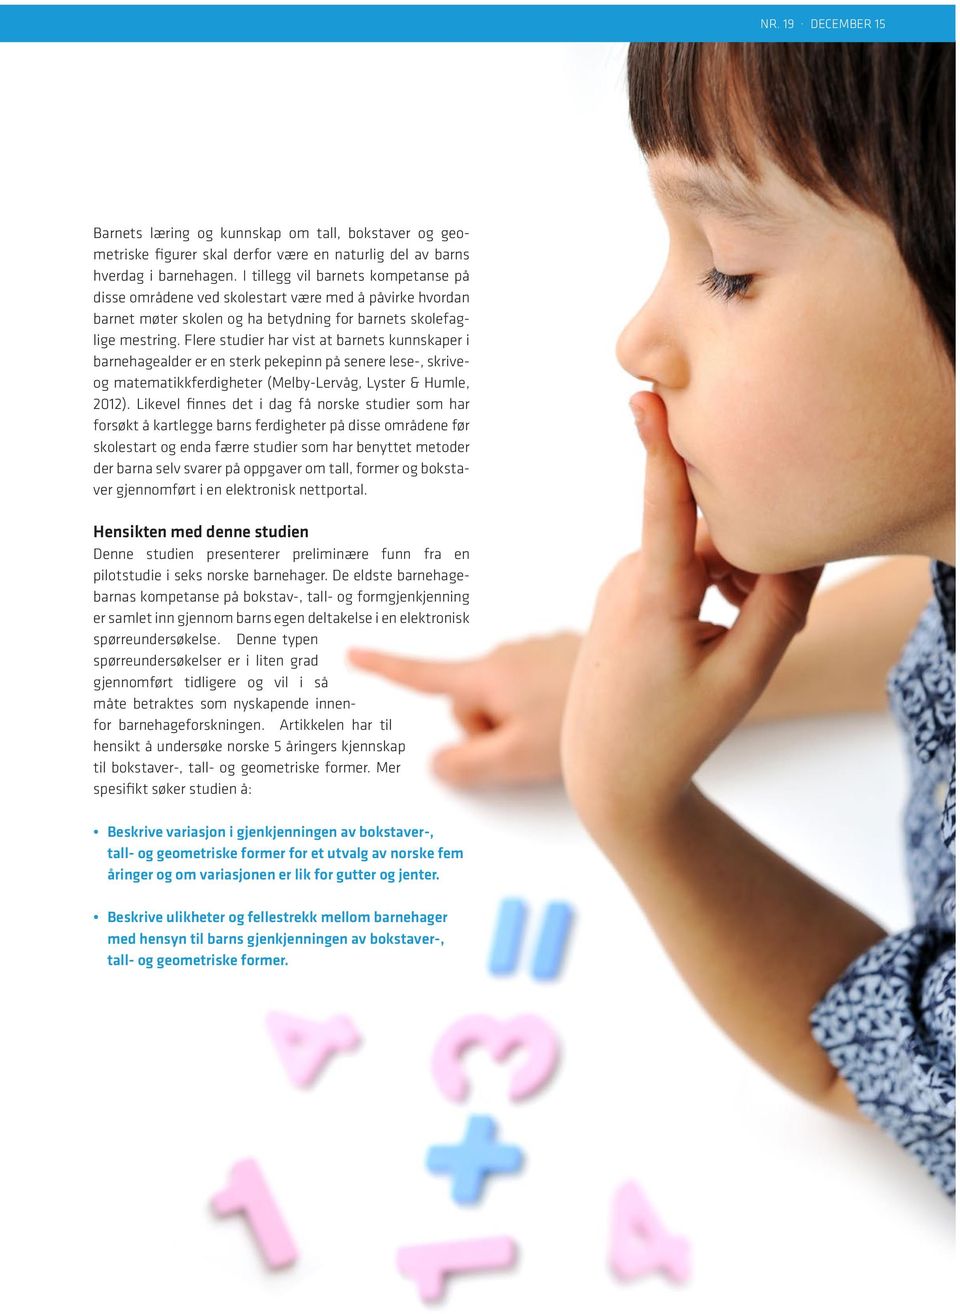 Flere studier har vist at barnets kunnskaper i barnehagealder er en sterk pekepinn på senere lese-, skriveog matematikkferdigheter (Melby-Lervåg, Lyster & Humle, 2012).